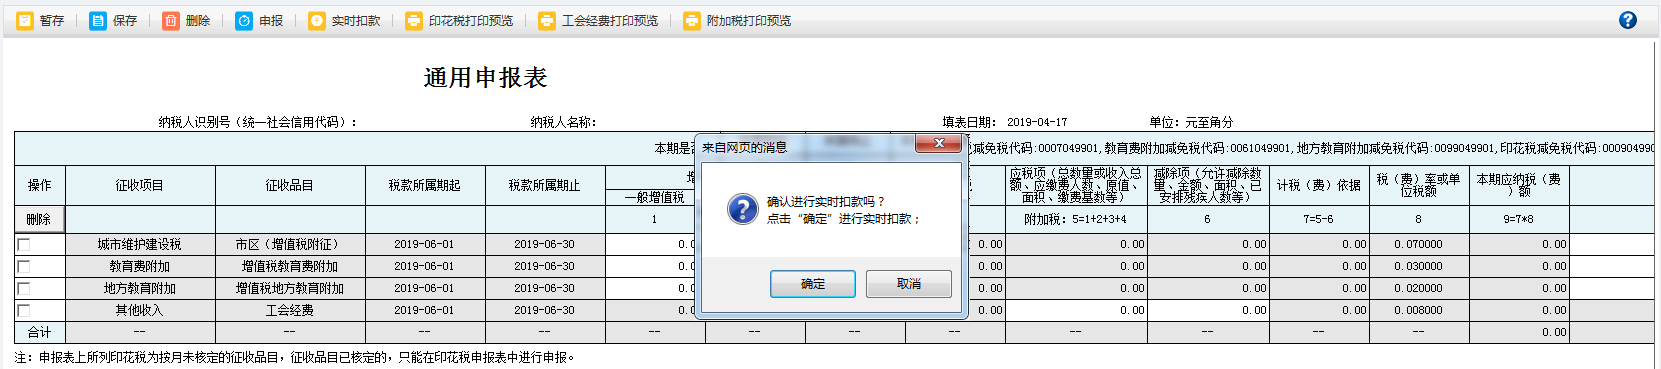 河南省电子税务局车船税代收代缴报告表打印预览或导出